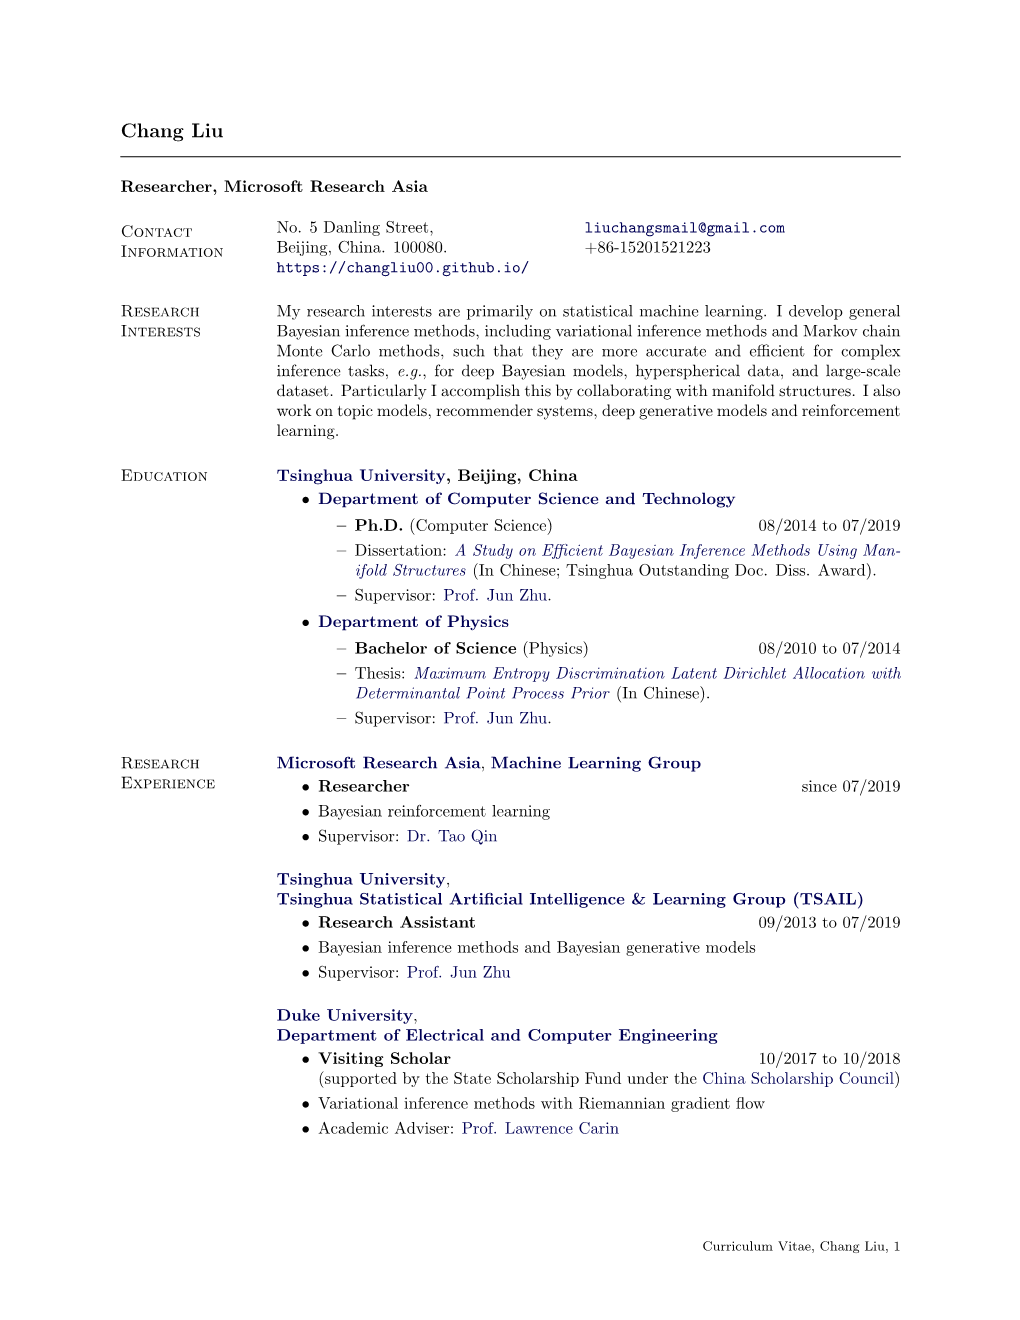 Curriculum Vitae, Chang Liu, 1 Publications [Google Scholar Proﬁle][Github] [1] Chang Liu, Jingwei Zhuo, and Jun Zhu